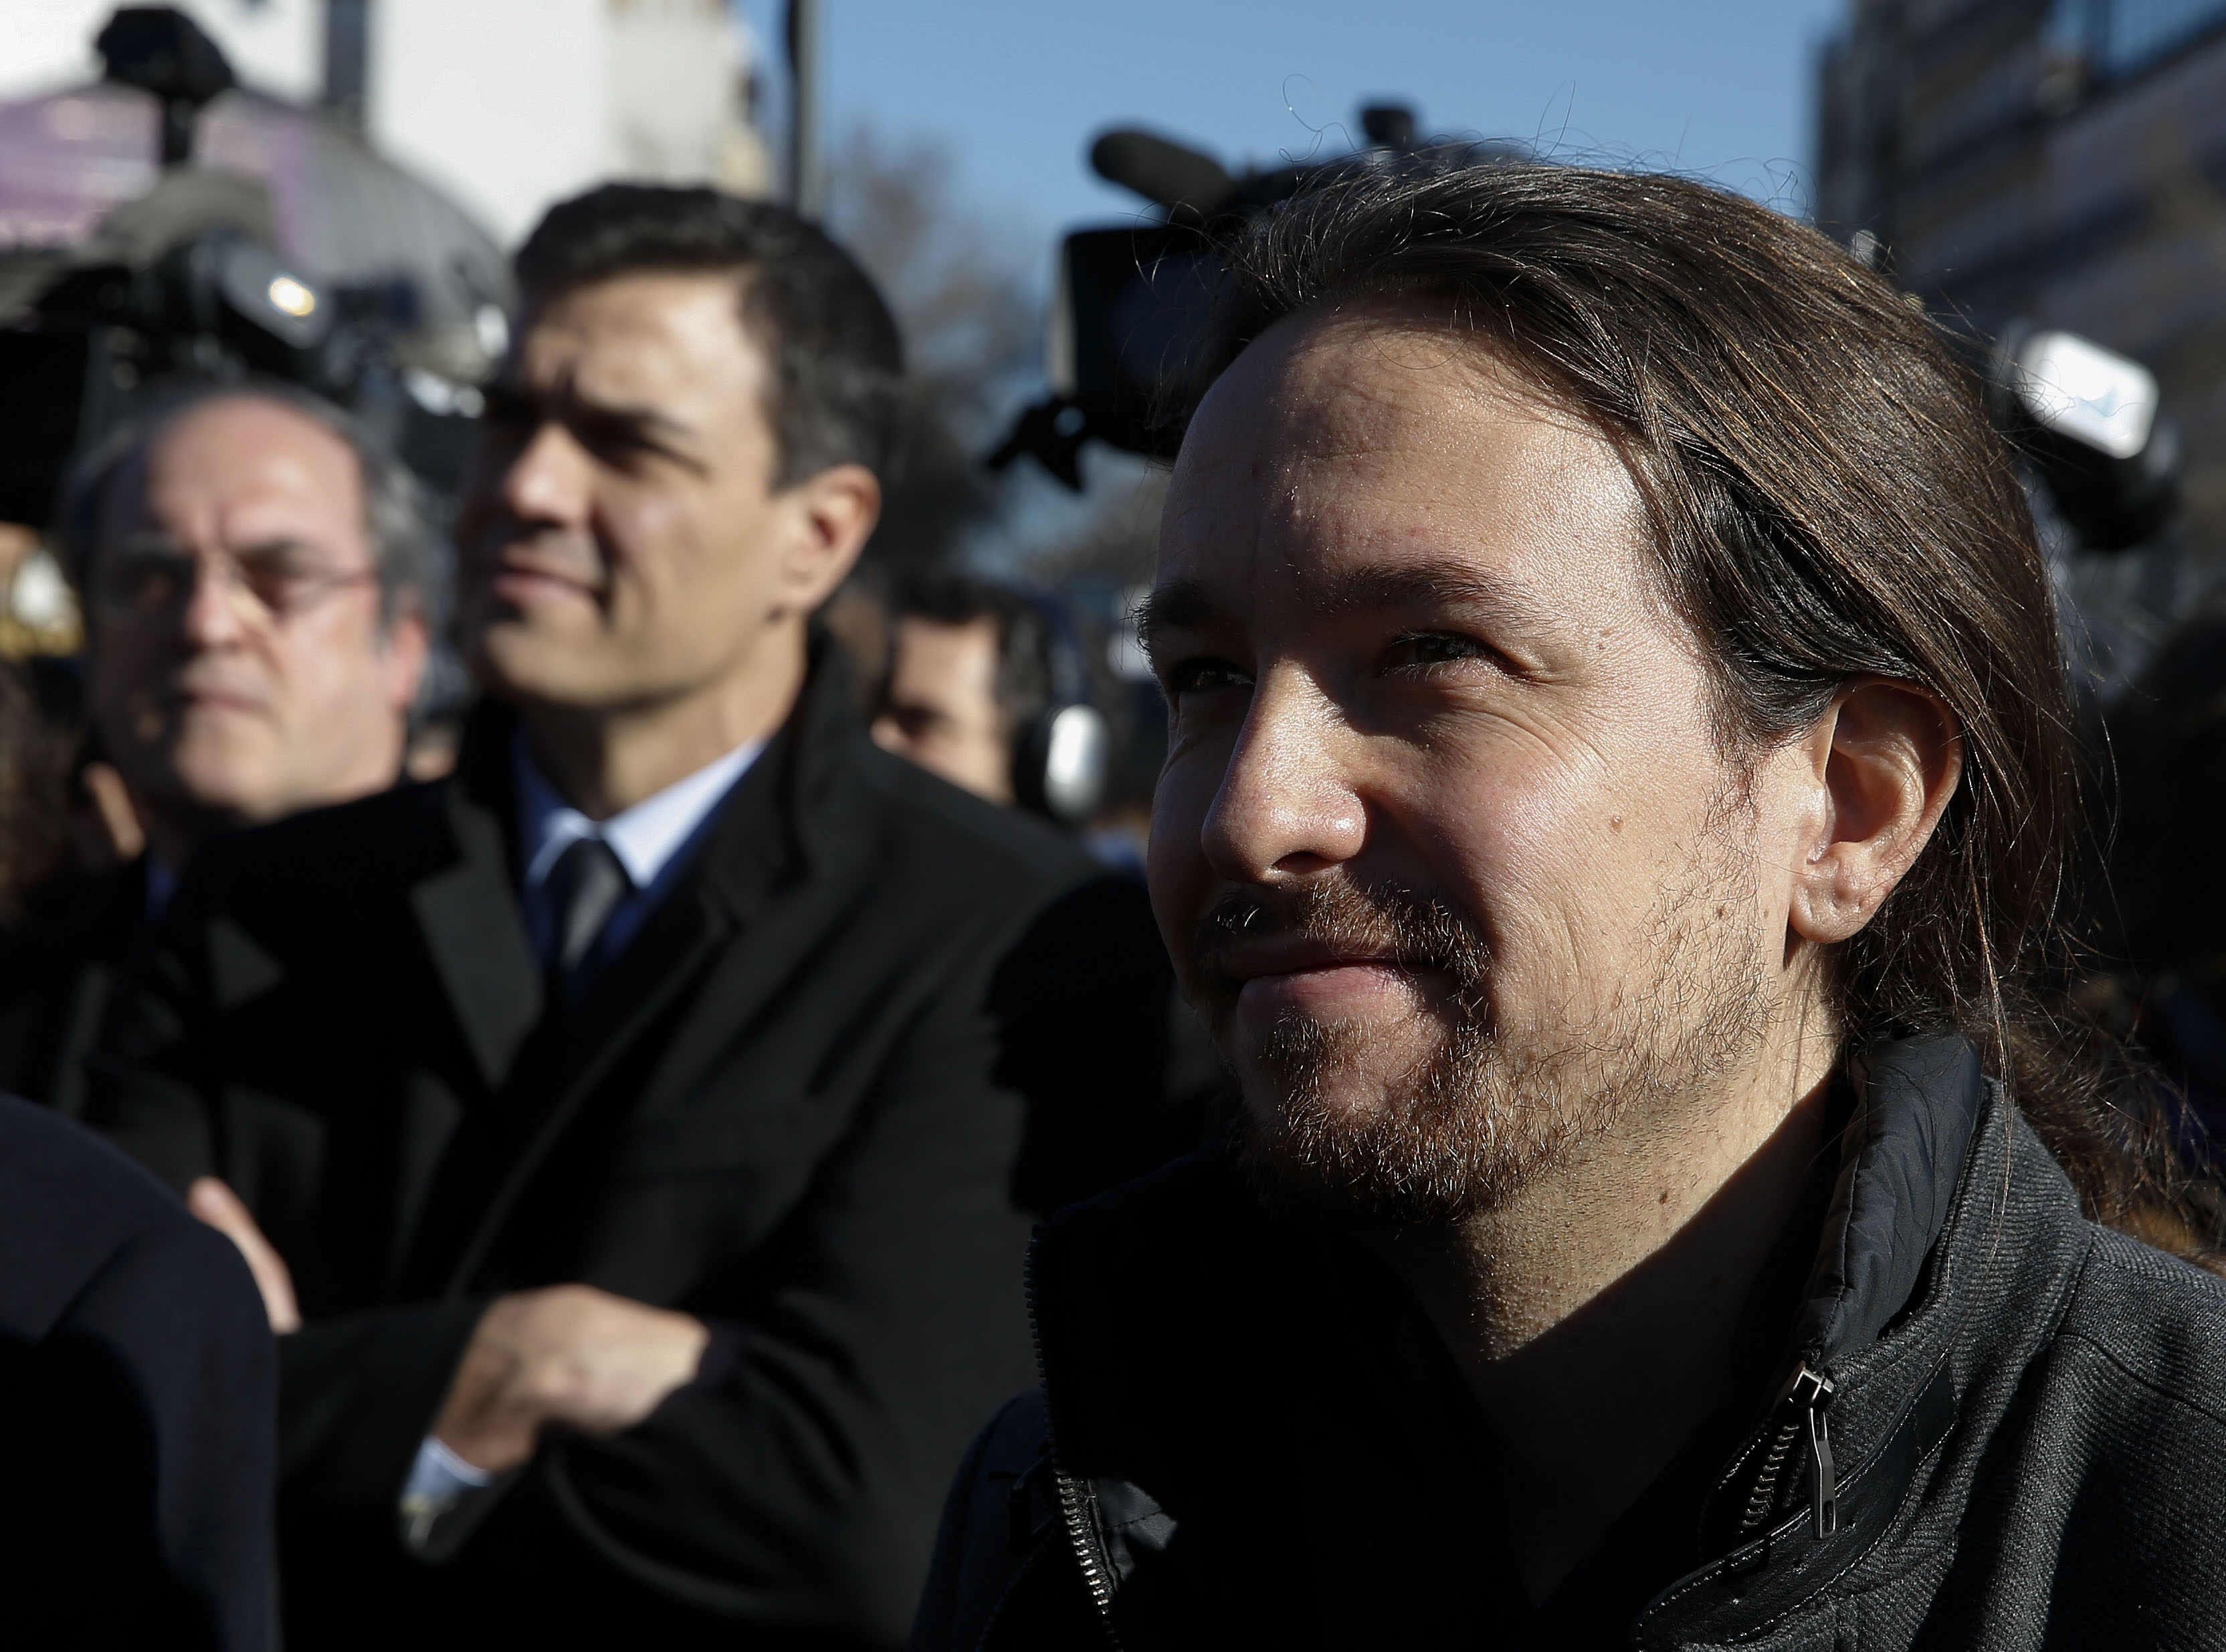 PSOE i Unidos Podemos exigeixen a De Guindos explicar al Congrés la proposta de Soria